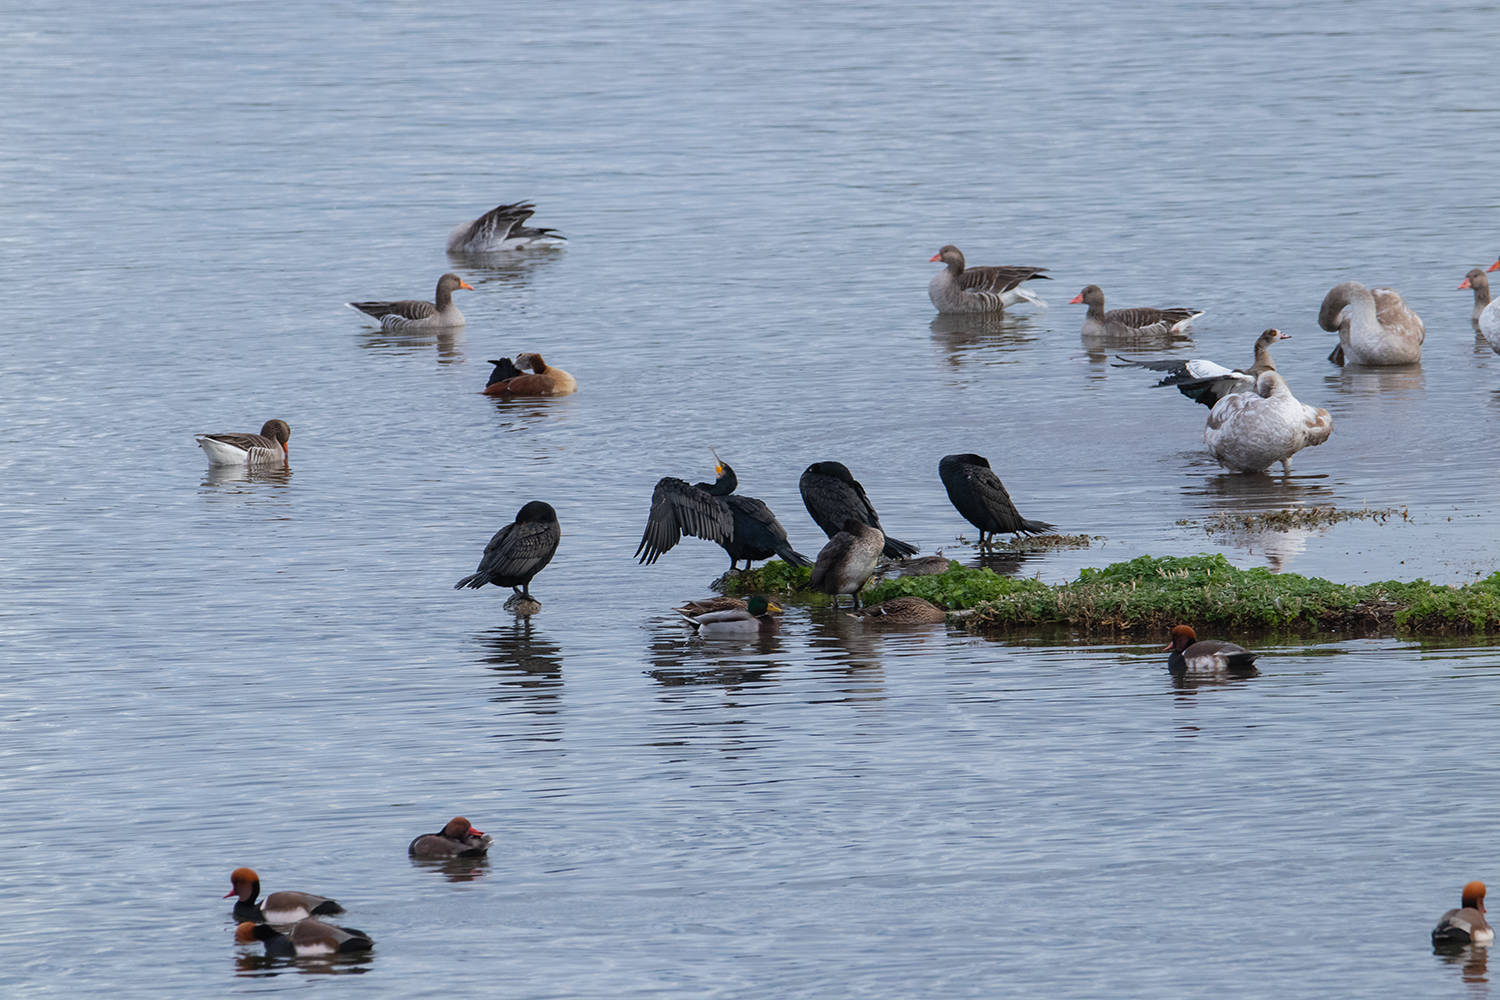 Vögel am Wasser wie Kormorane sitzen auf der erdigen Insel Enten und Gänse